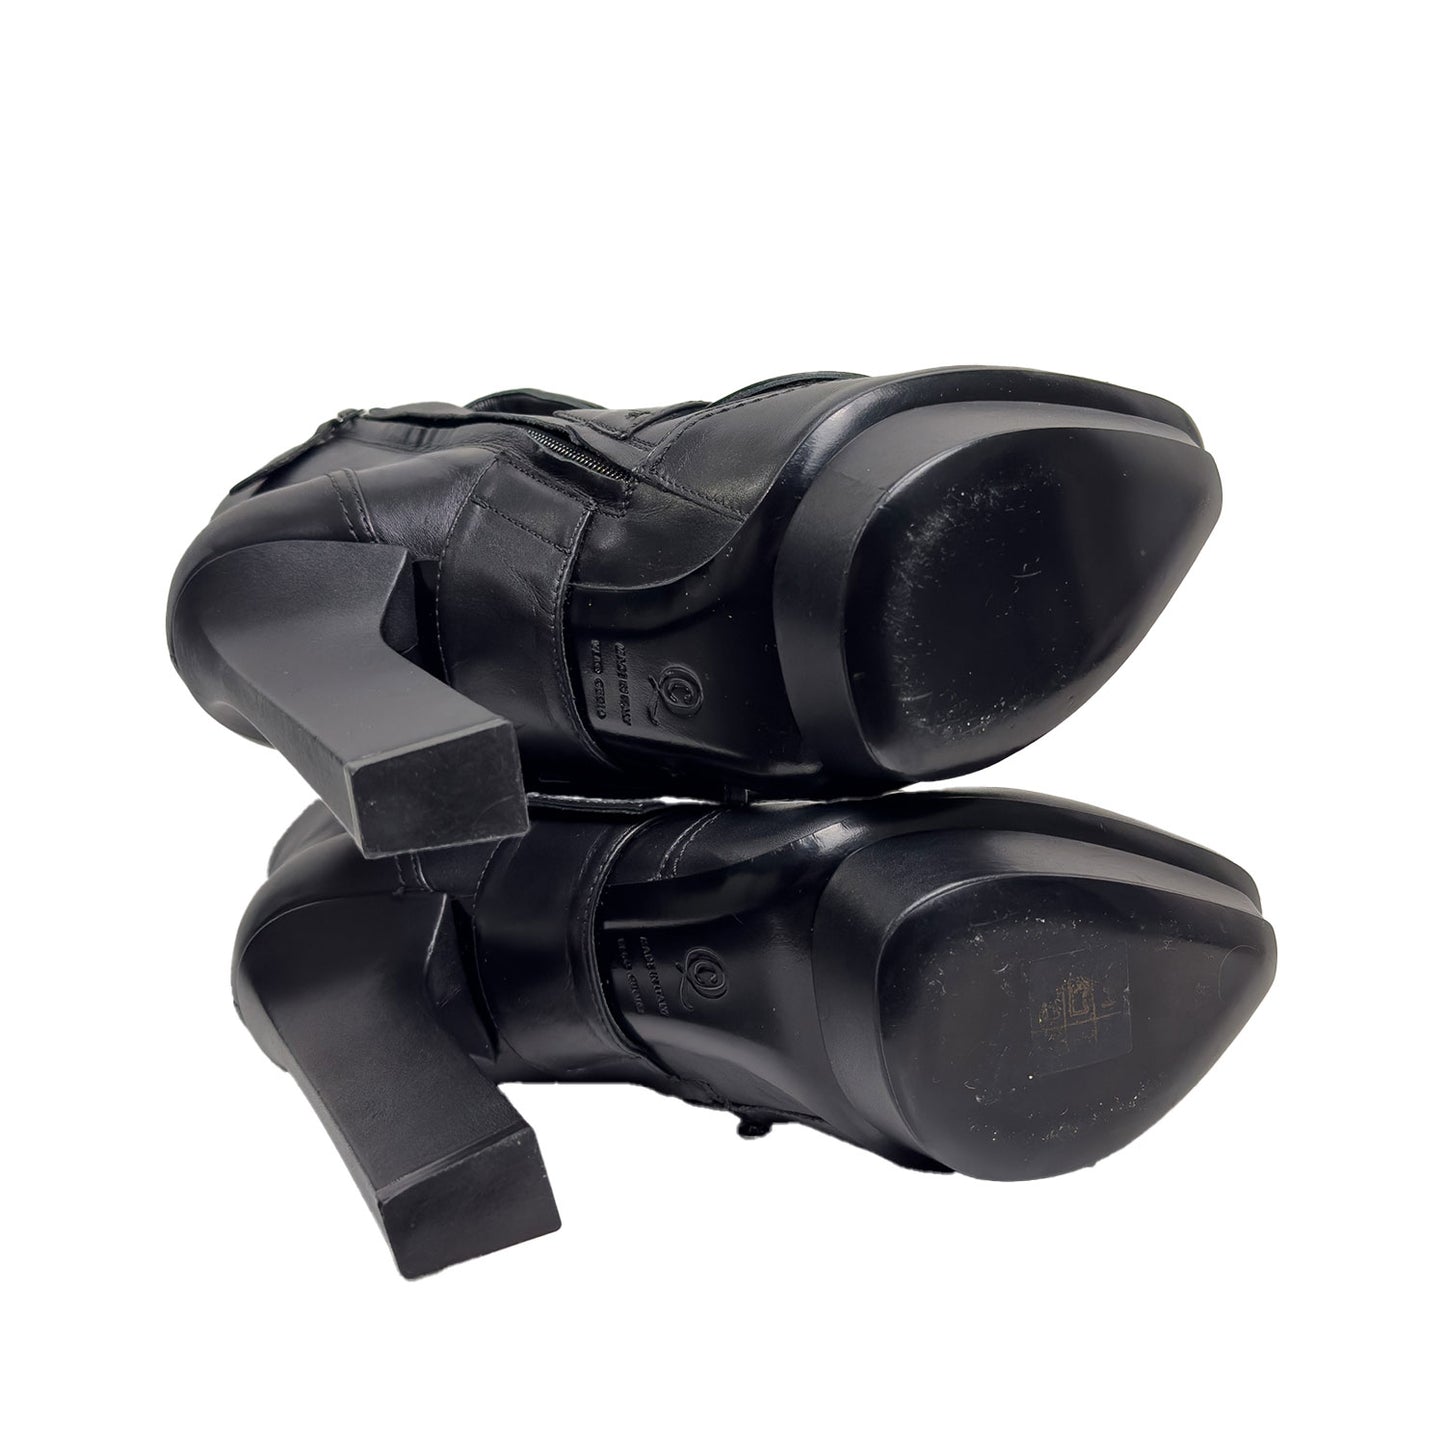 Alexander McQueen Boot Heels - Size 40